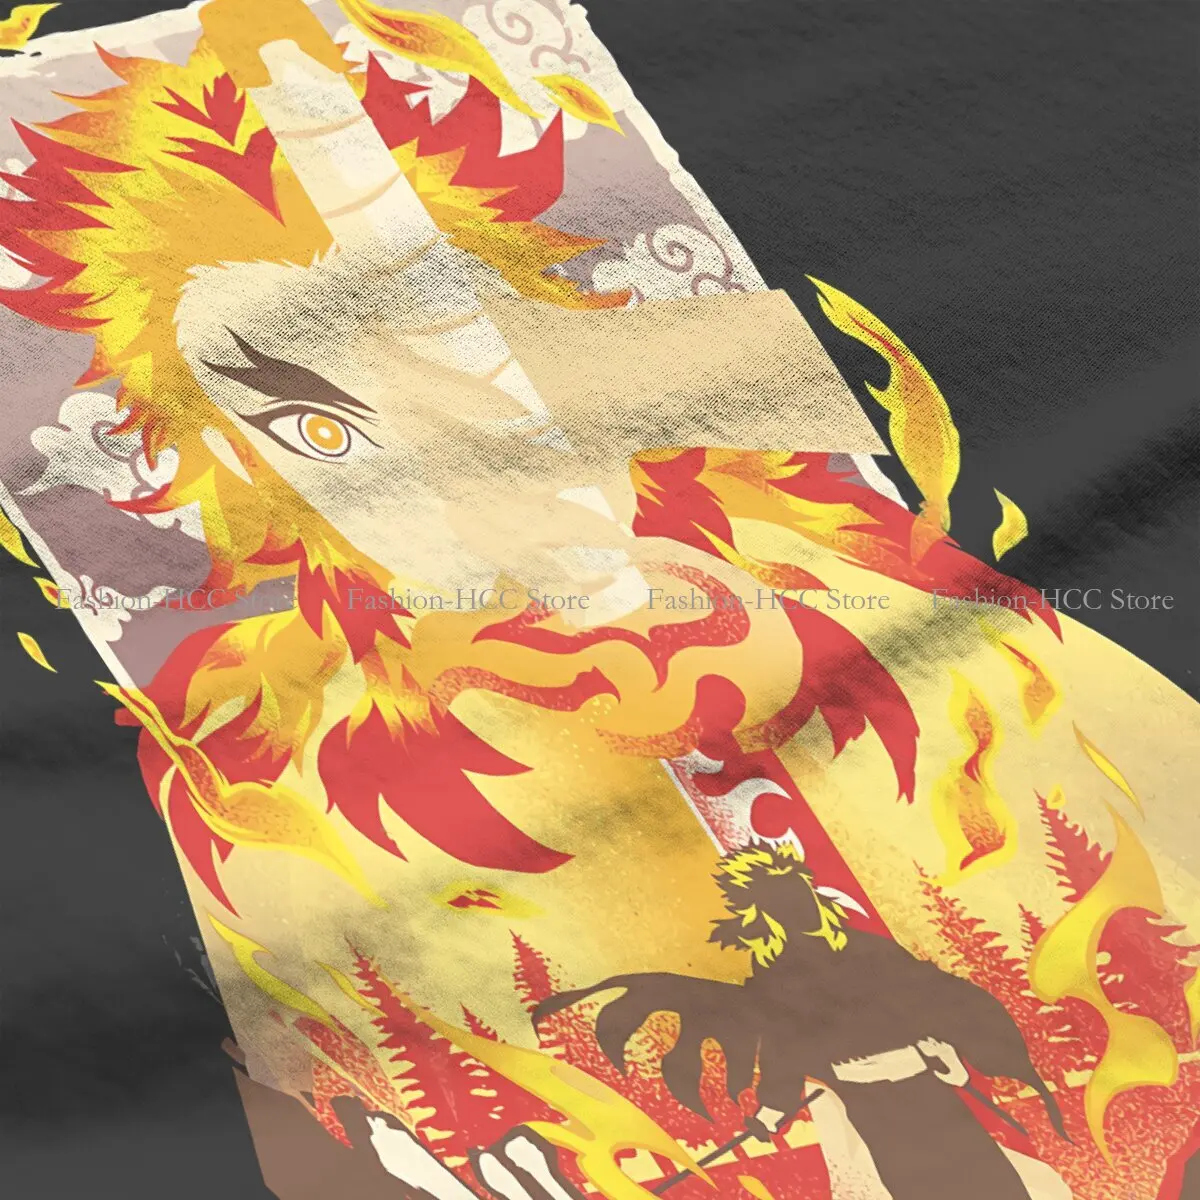 Футболки Demon Slayer, мужская футболка с огненным принтом Kyo Juro, забавная одежда